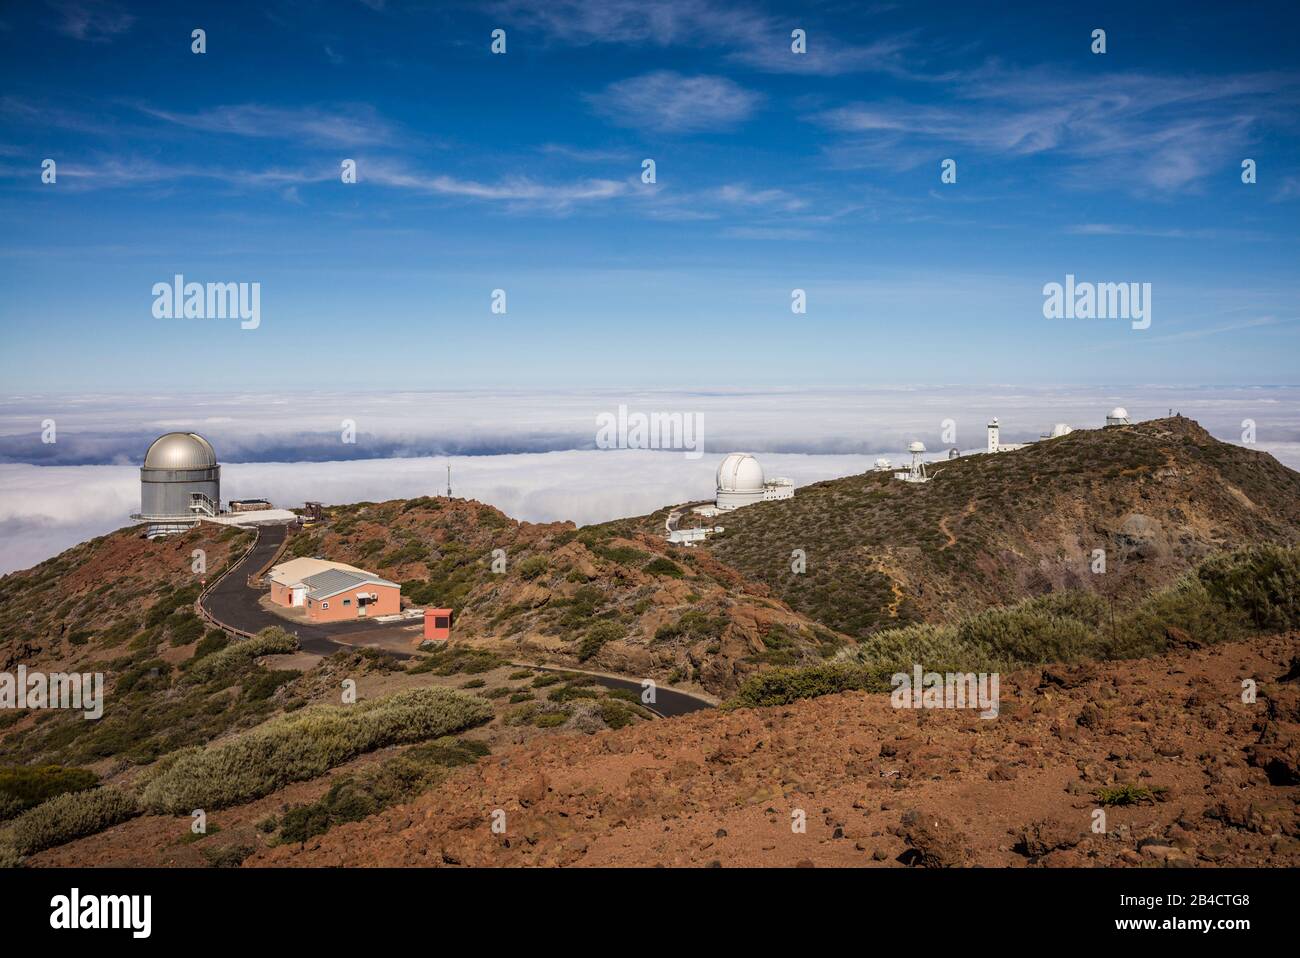 Spain, Canary Islands, La Palma Island, Parque Nacional Caldera de Taburiente national park,  Roque de los Muchachos Observatory, telescopes Stock Photo